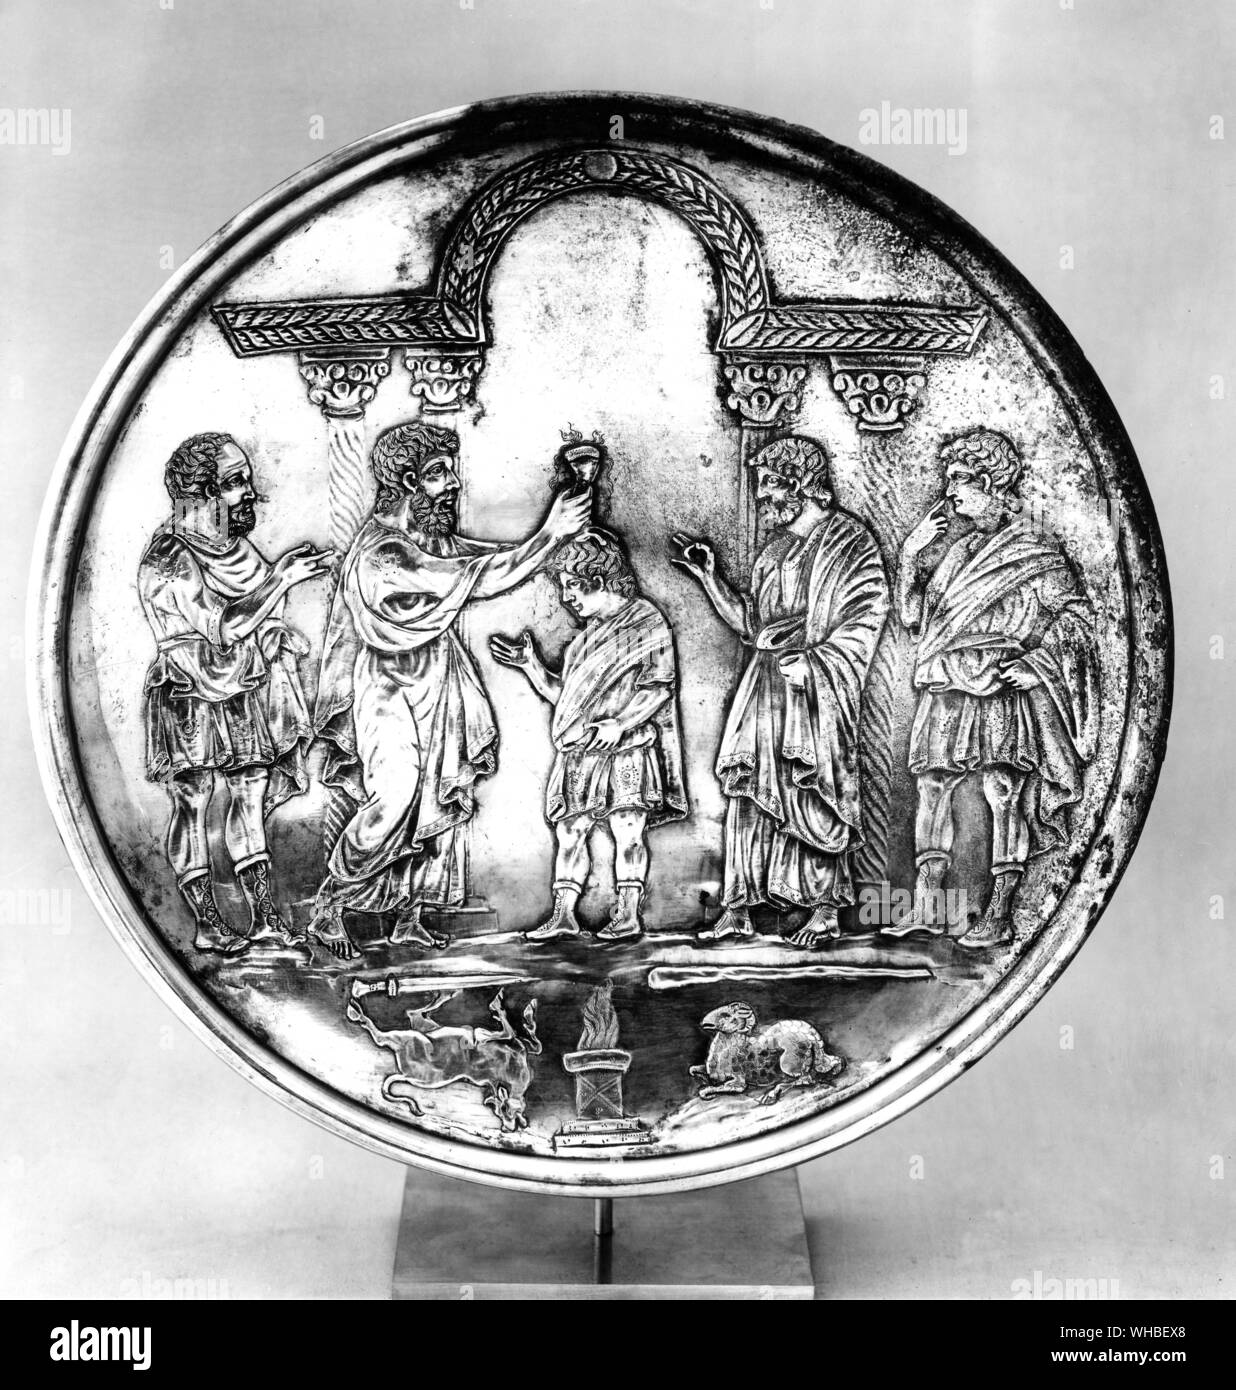 Metallarbeiten - Silber - frühe VII Jahrhundert (610-630) - Datenträger, die von Samuel David zum König gesalbt. Stockfoto